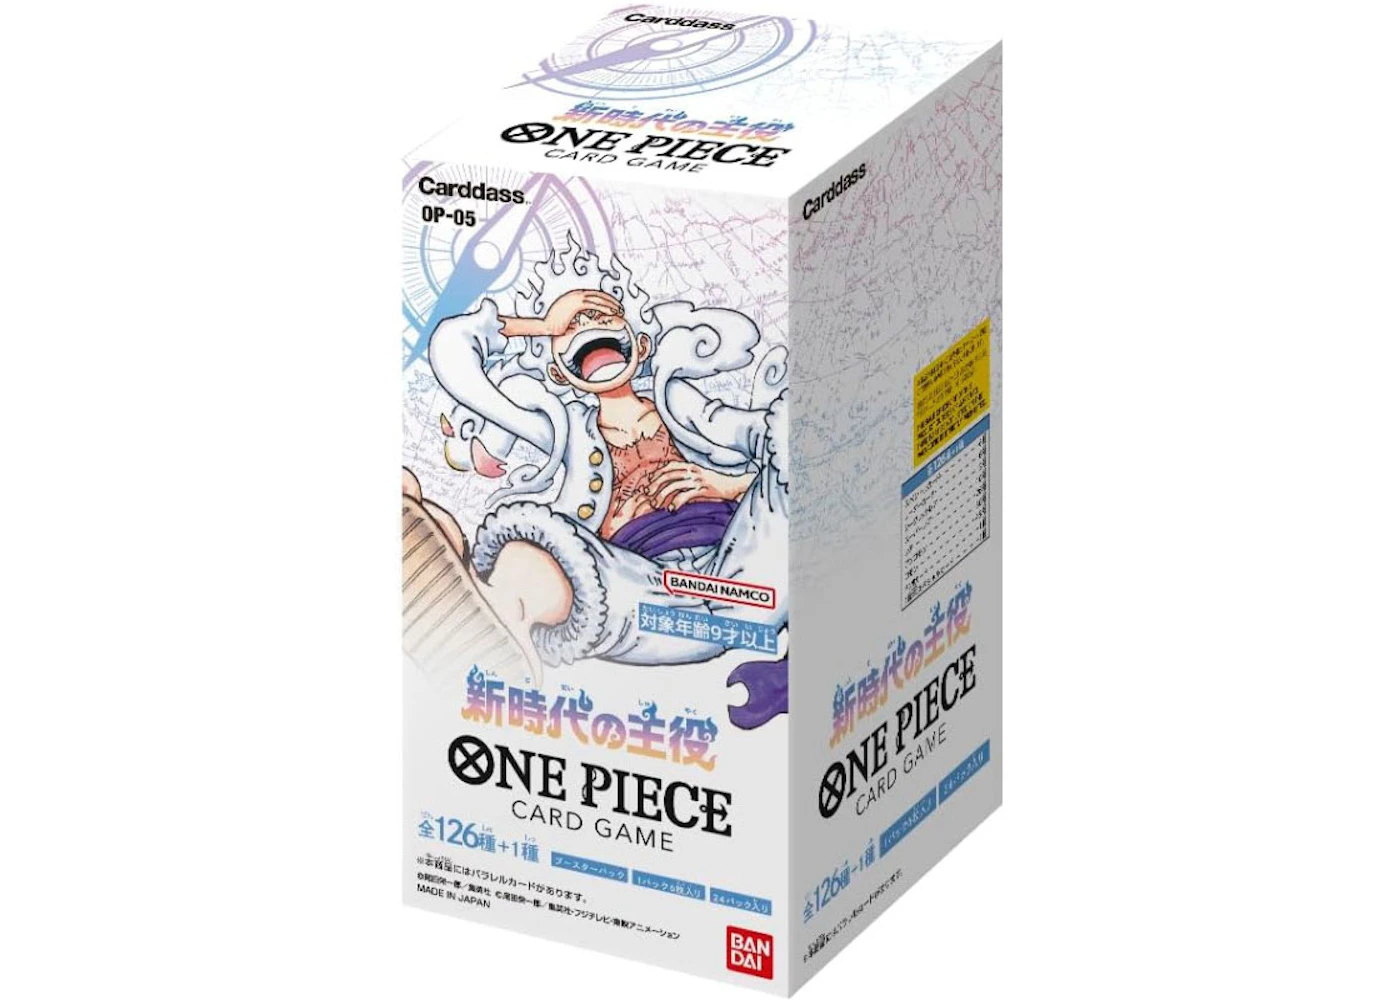 Bandai One Piece Card Game Awakening of New Era Booster Box (OP-05)  Japanese - US